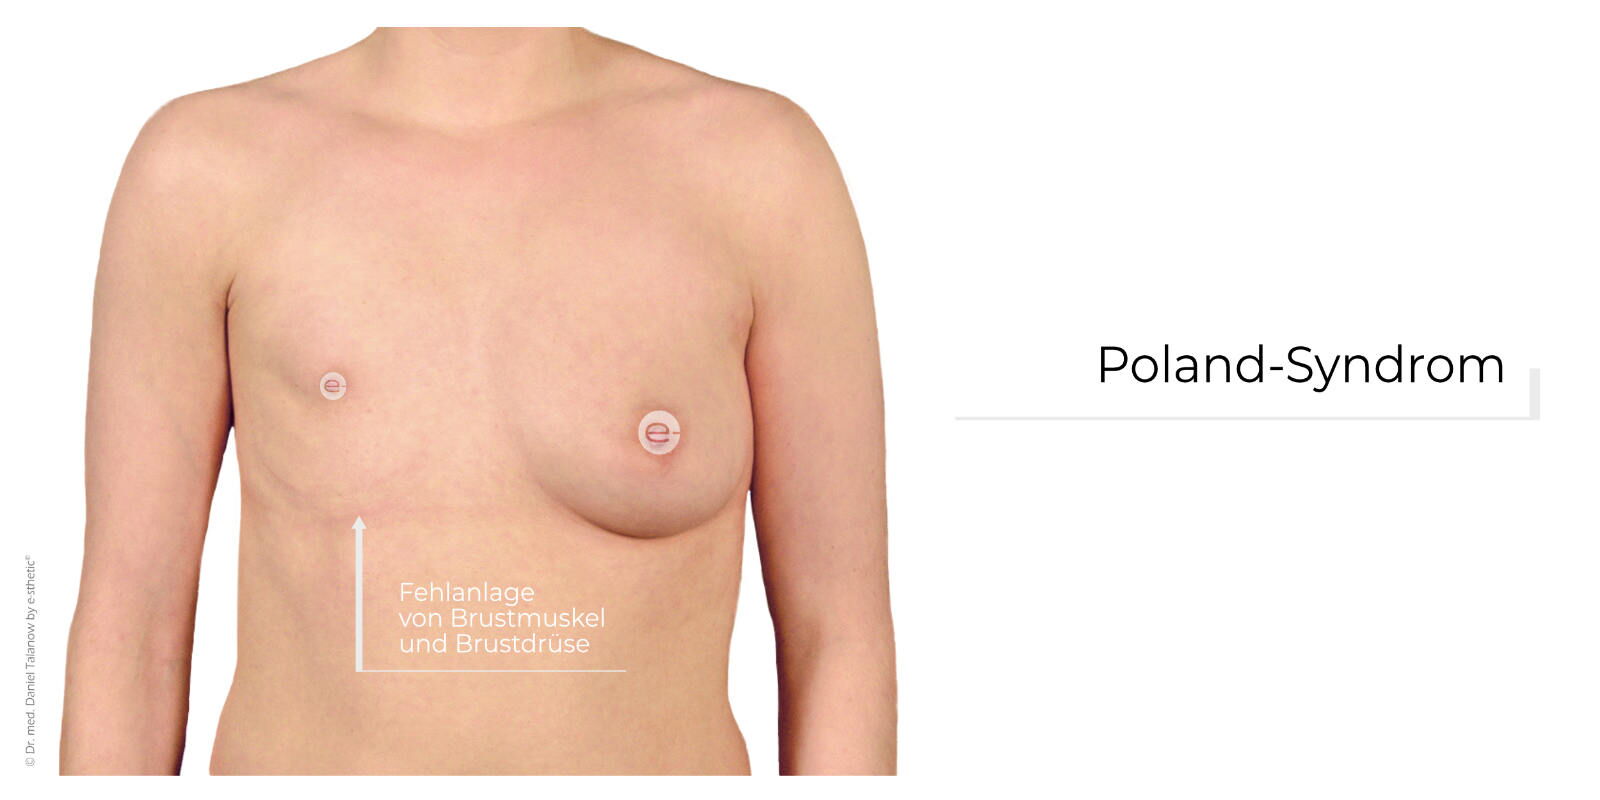 Von einem Poland-Syndrom wird gesprochen, wenn sowohl die Brustdrüse als auch der M. pectoralis major (großer Brustmuskel) nicht ausgebildet sind